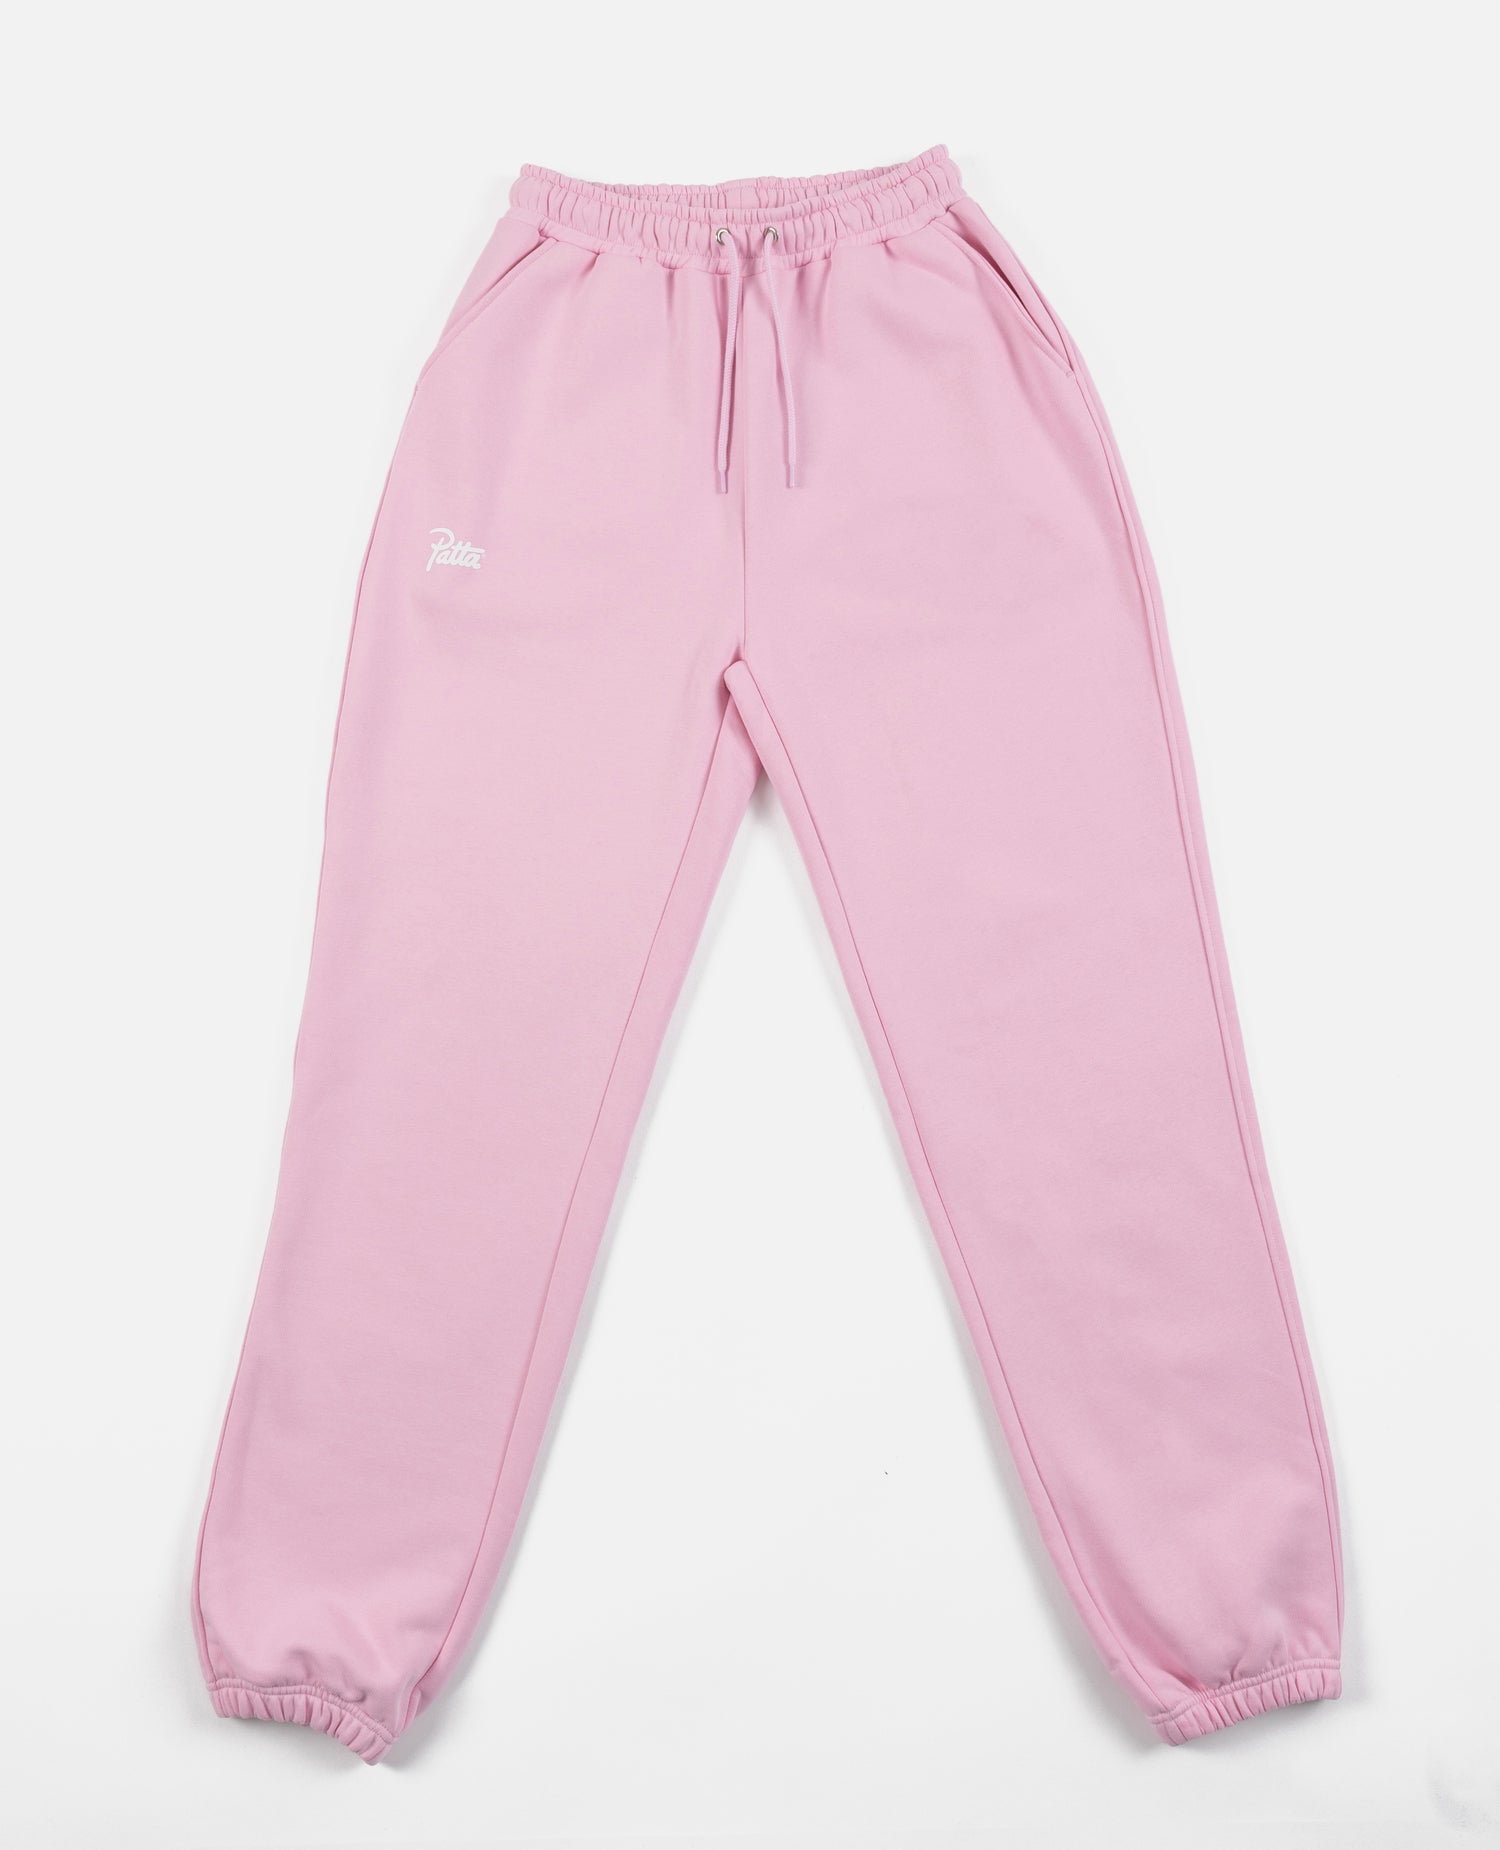 Pantalon de jogging basique Patta Femme (Cradle Pink)